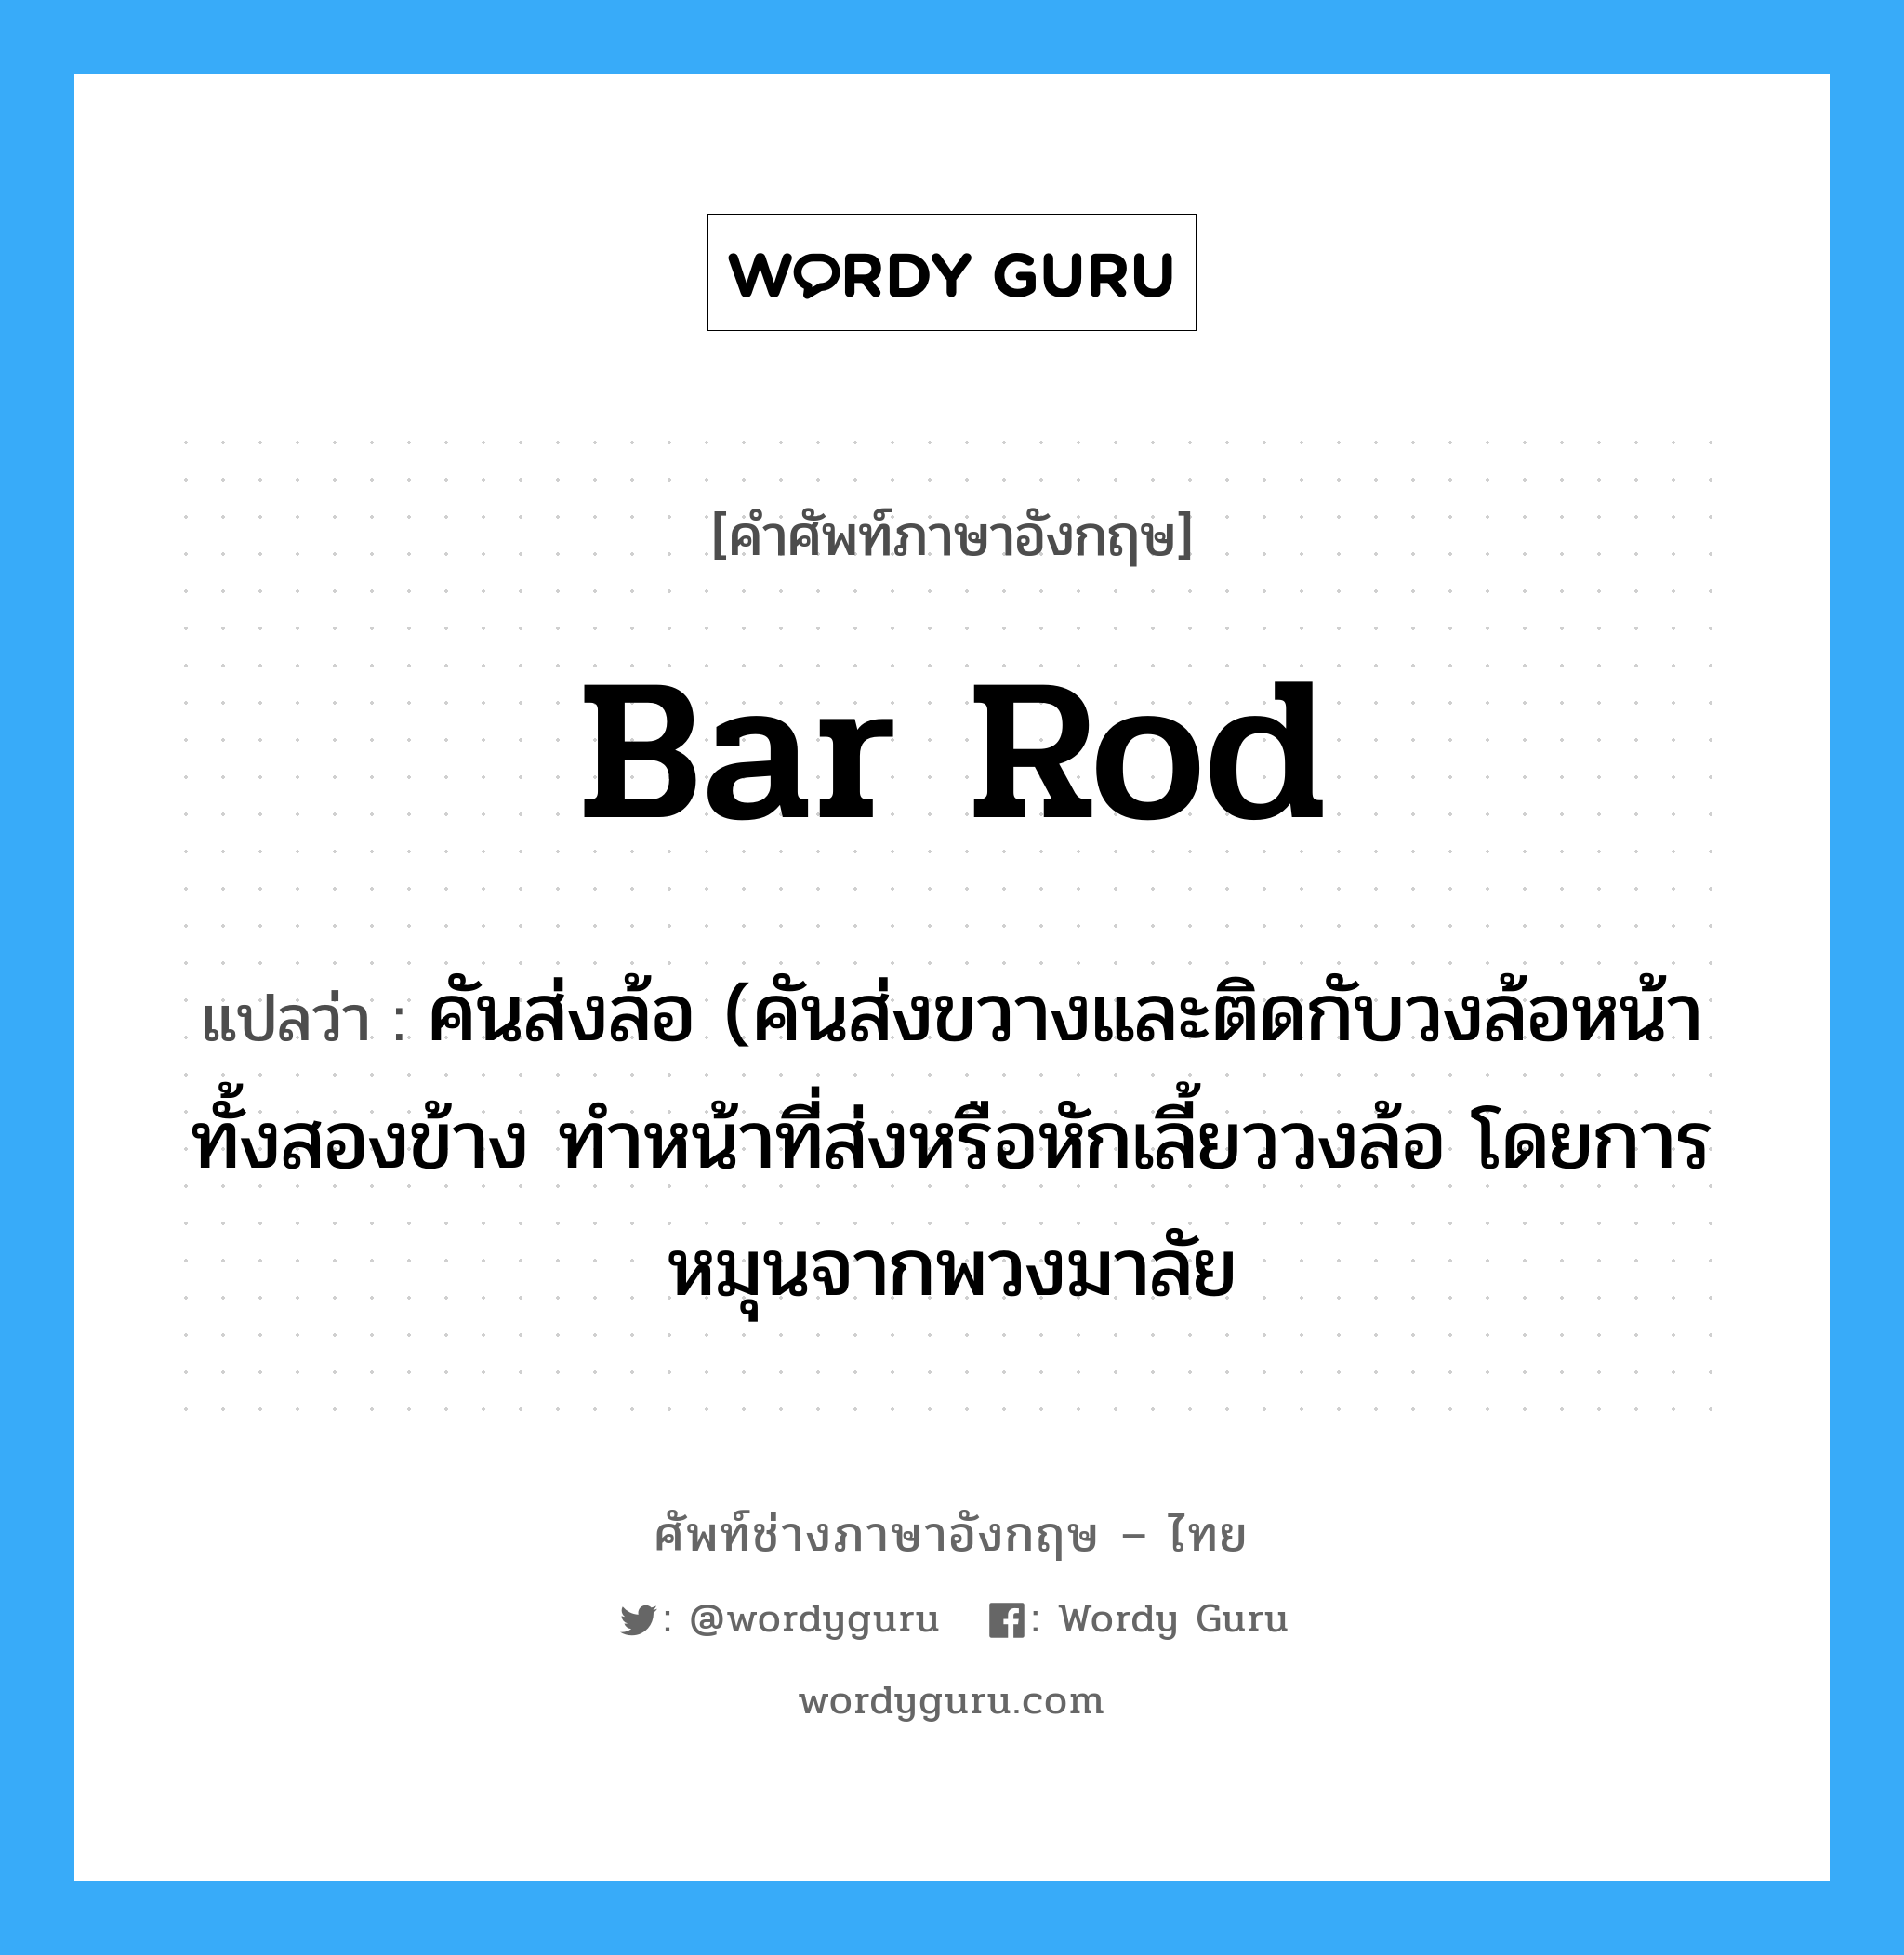 bar rod แปลว่า?, คำศัพท์ช่างภาษาอังกฤษ - ไทย bar rod คำศัพท์ภาษาอังกฤษ bar rod แปลว่า คันส่งล้อ (คันส่งขวางและติดกับวงล้อหน้าทั้งสองข้าง ทำหน้าที่ส่งหรือหักเลี้ยววงล้อ โดยการหมุนจากพวงมาลัย